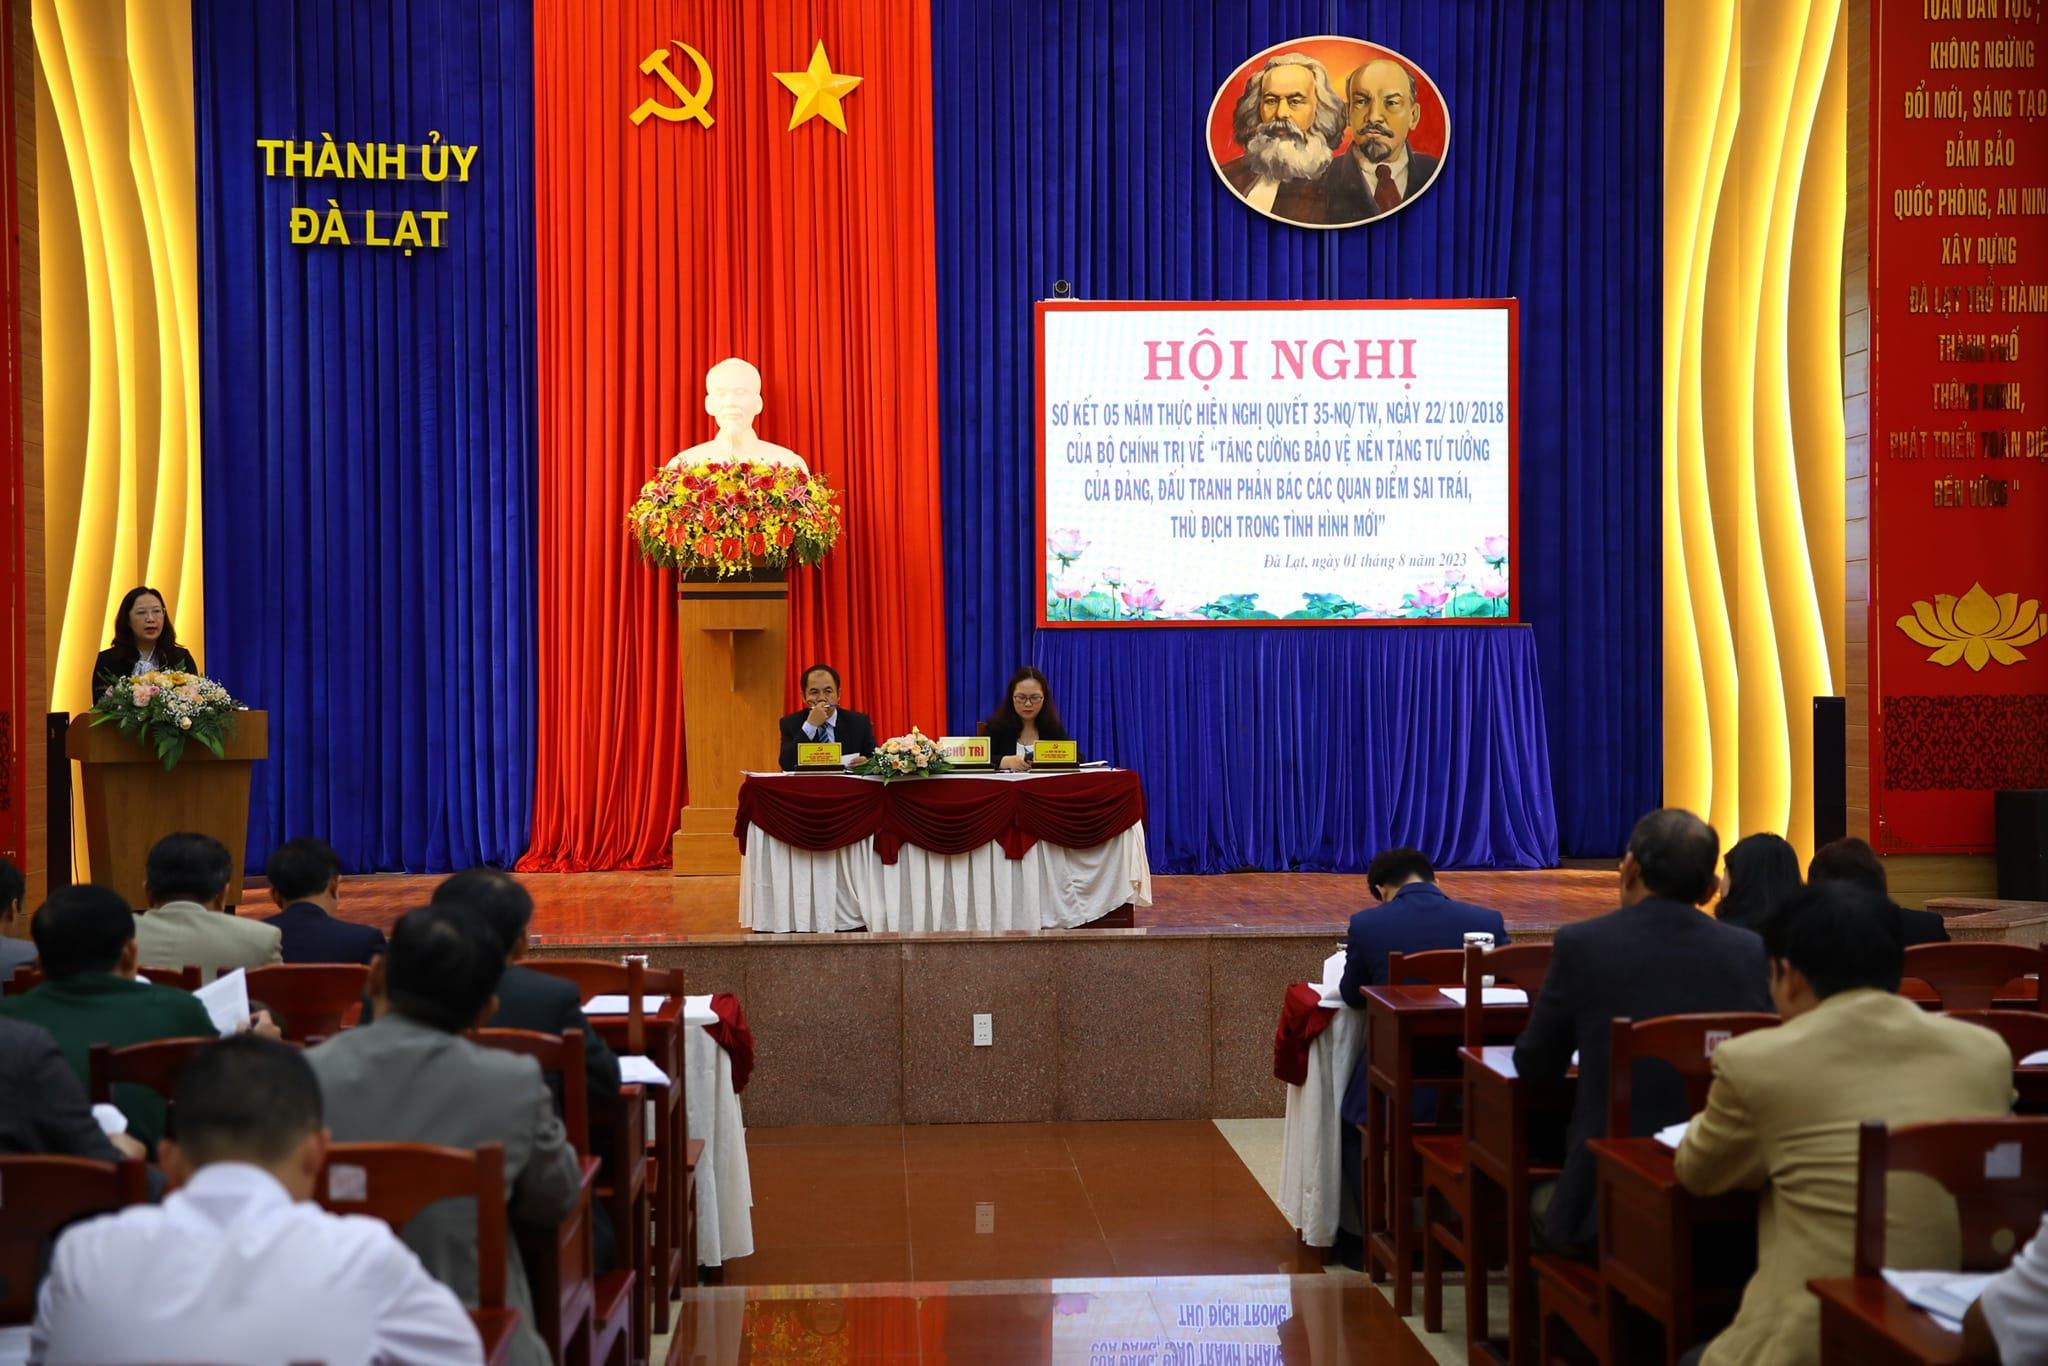 Đồng chí Lê Thị Hồng Phúc - Phó Trưởng ban Tuyên giáo Thành ủy báo cáo tham luận tại hội nghị